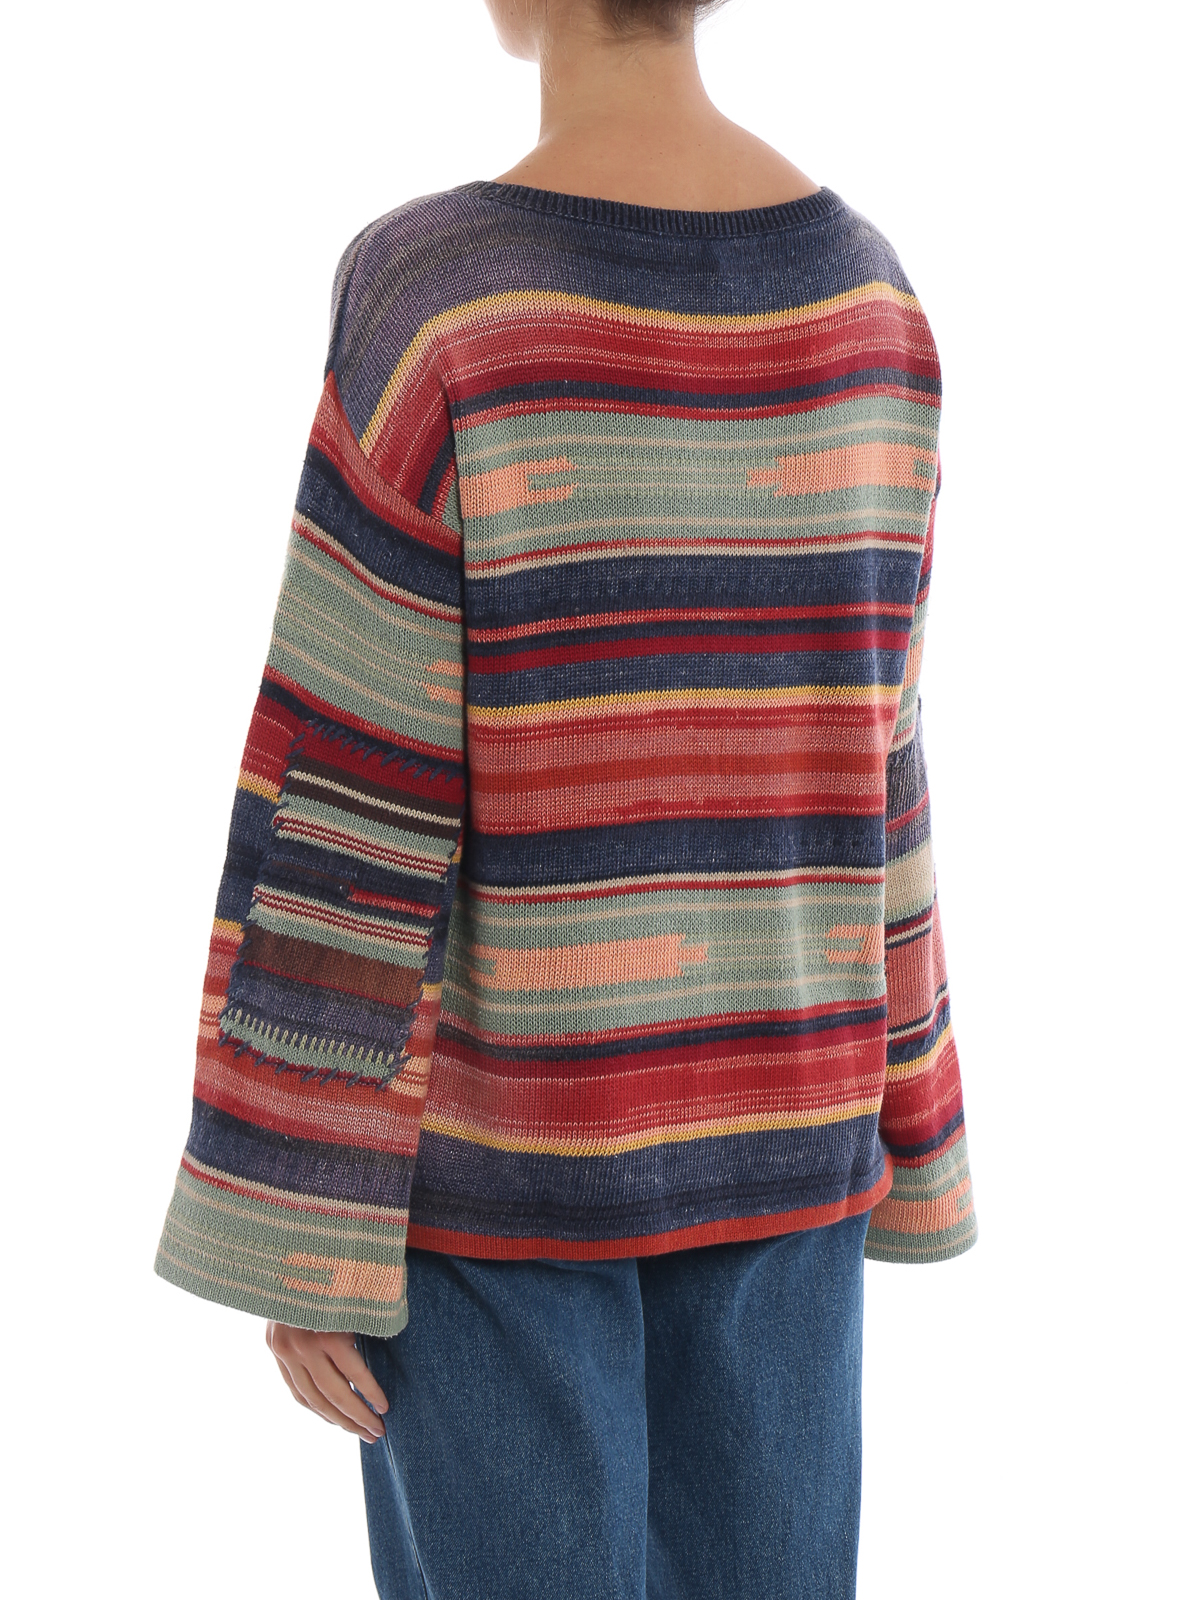 ralph lauren silk sweater